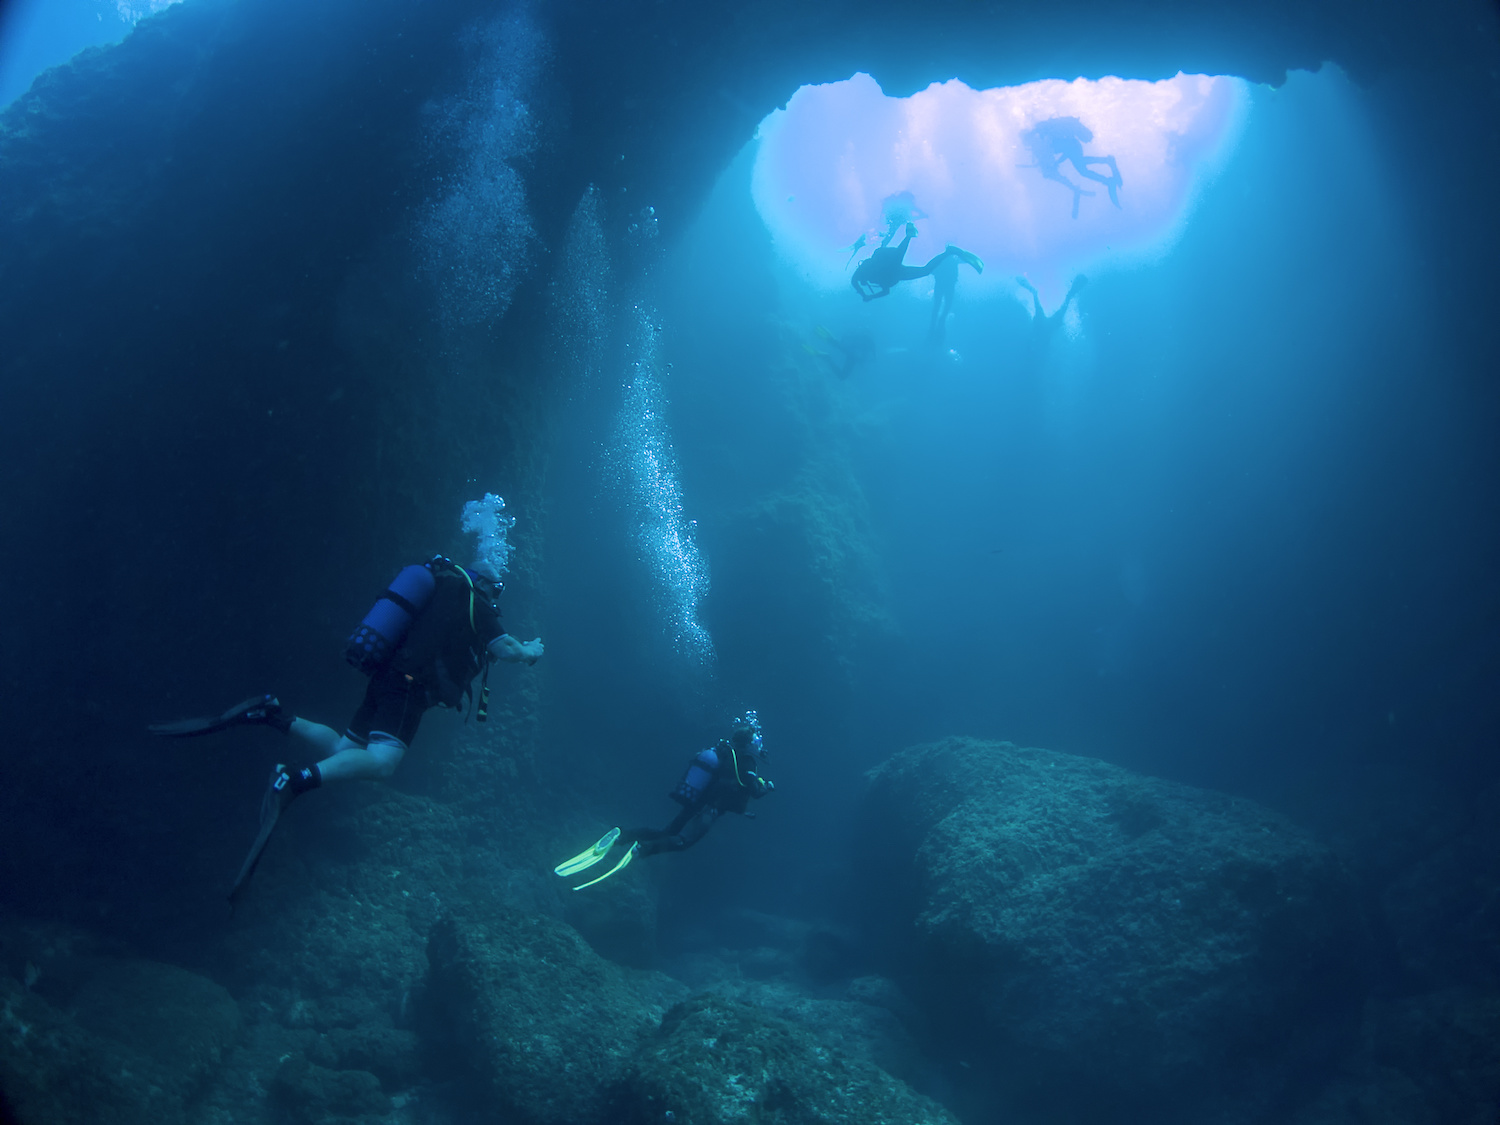 許多潛水員去關島藍洞潛水就是為了影到心型照片